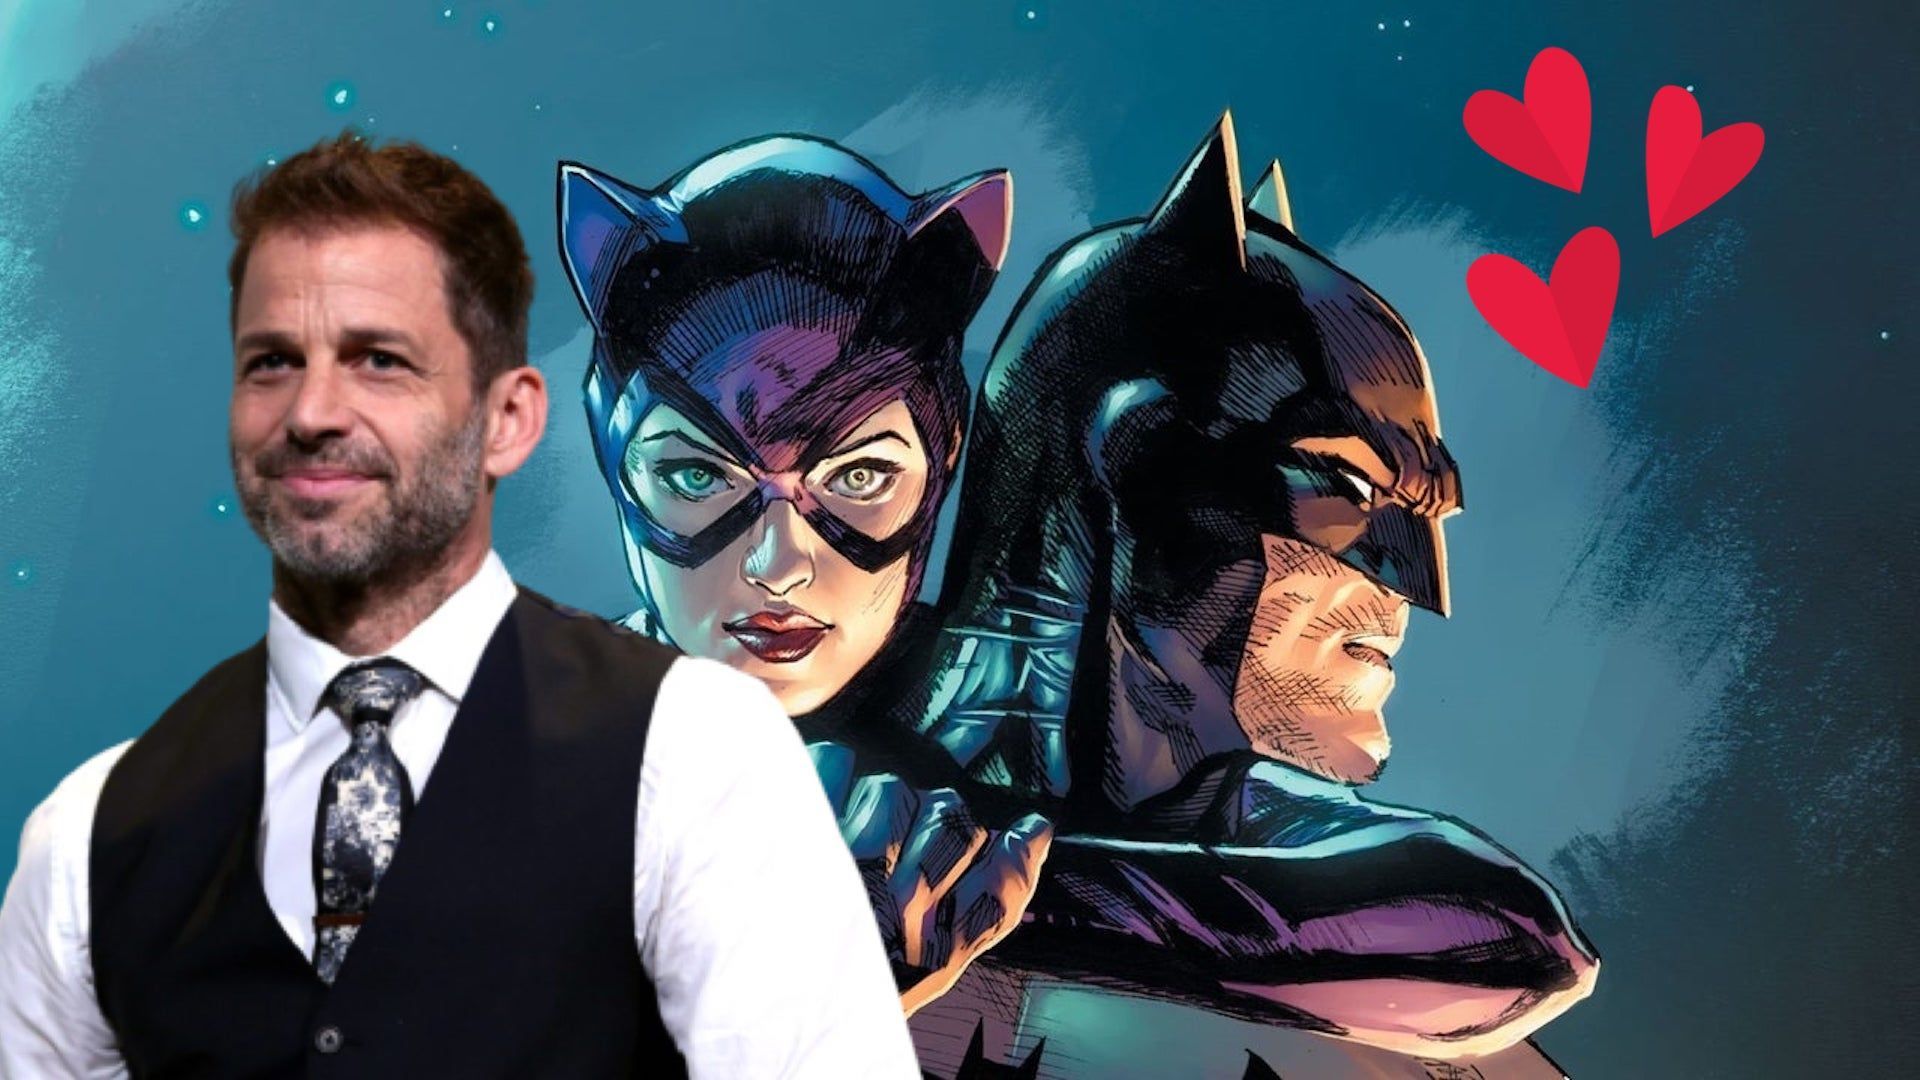 Zack Snyder comparte una imagen del sexo oral de Batman y Catwoman y la lía  - Vandal Random